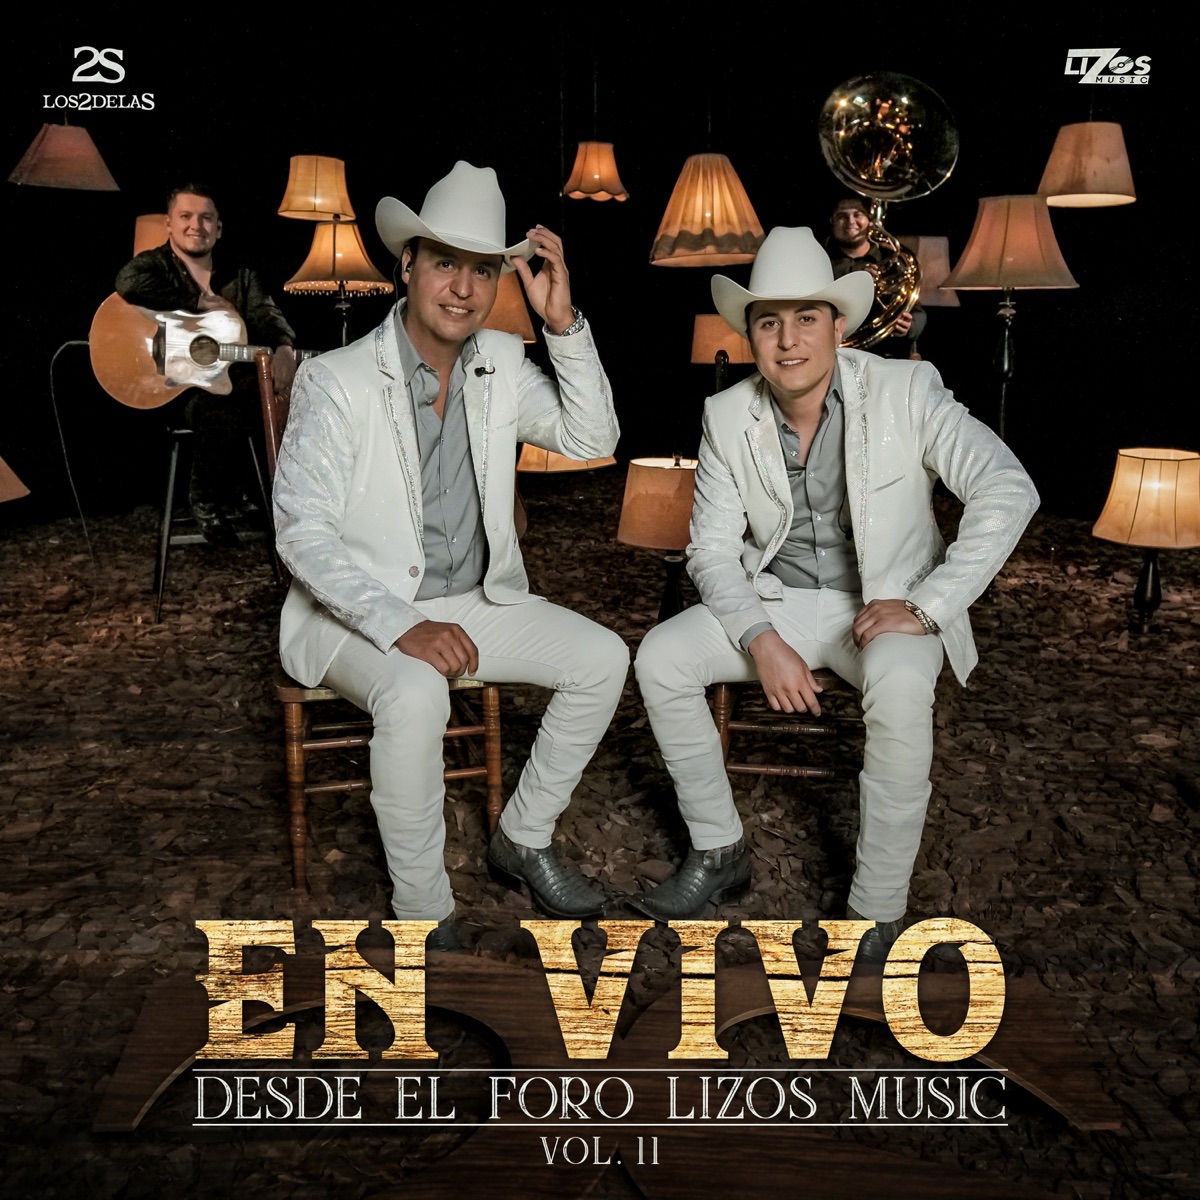 Estoy De Fiesta – Song by Los Verduleros – Apple Music